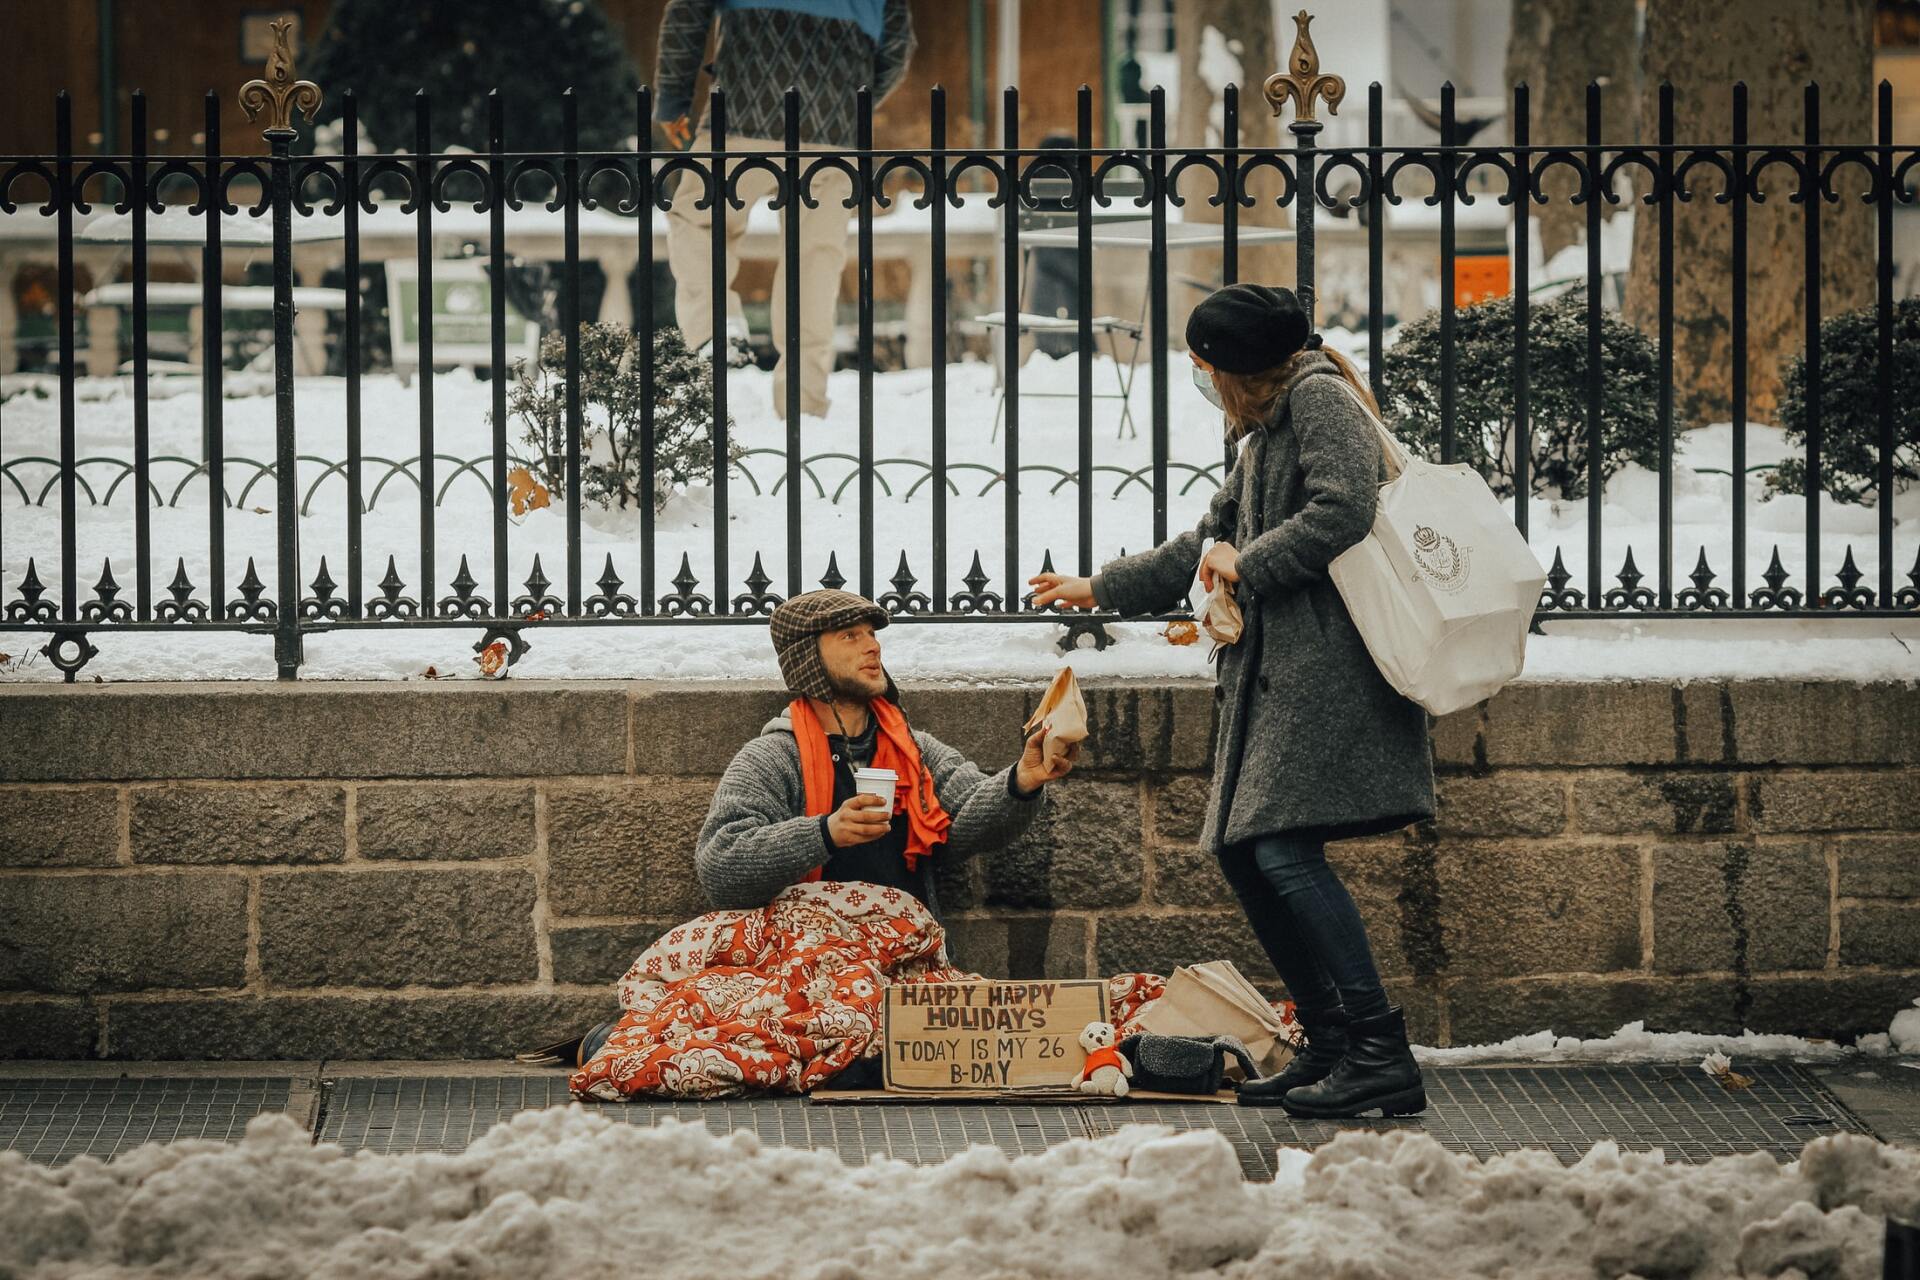 A women giving a man food